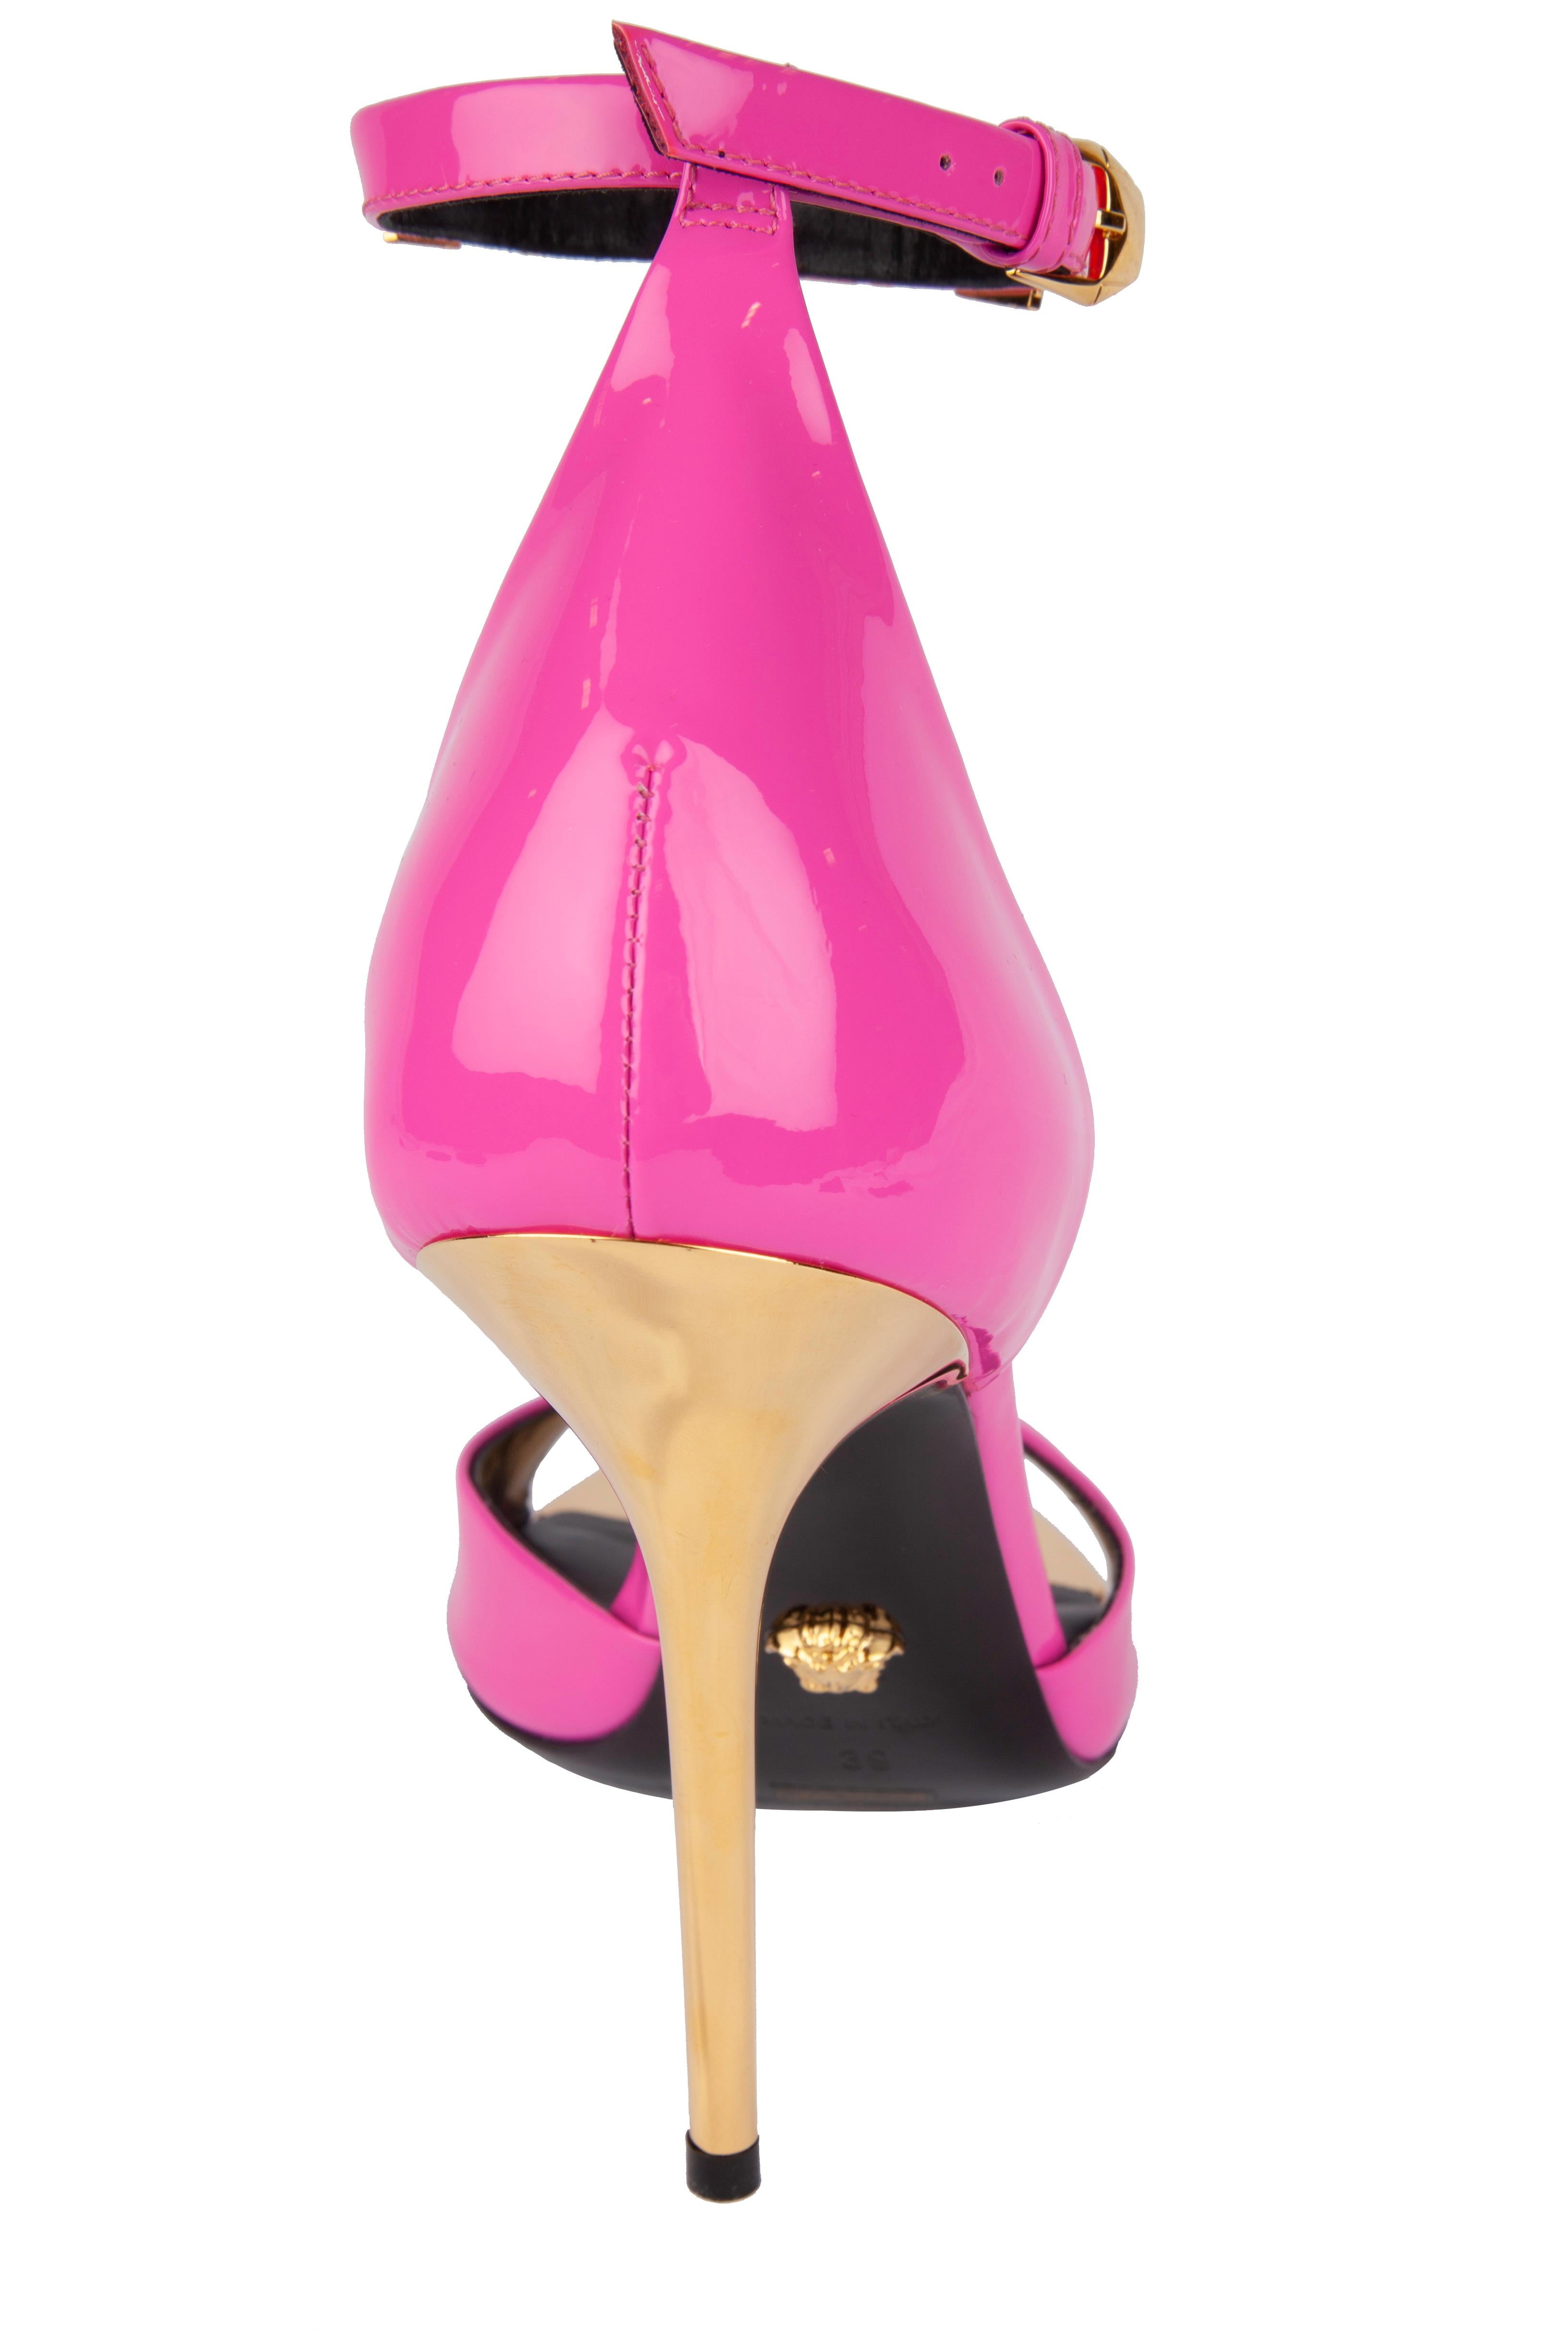 versace hot pink heels